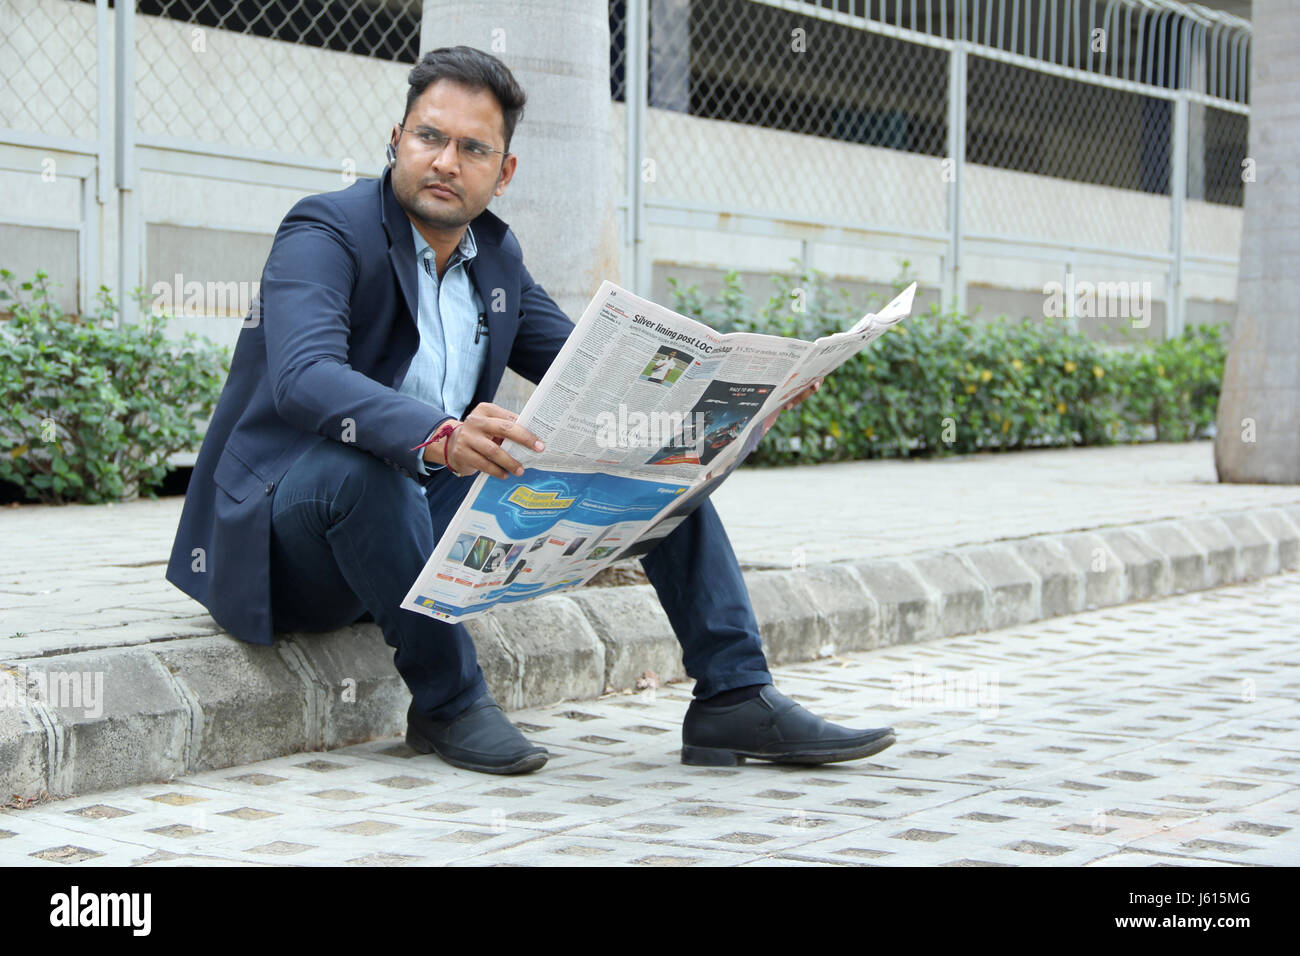 Junge indische Unternehmen Mann im Anzug mit Bluetooth-Lautsprecher, eine Zeitung lesen Stockfoto